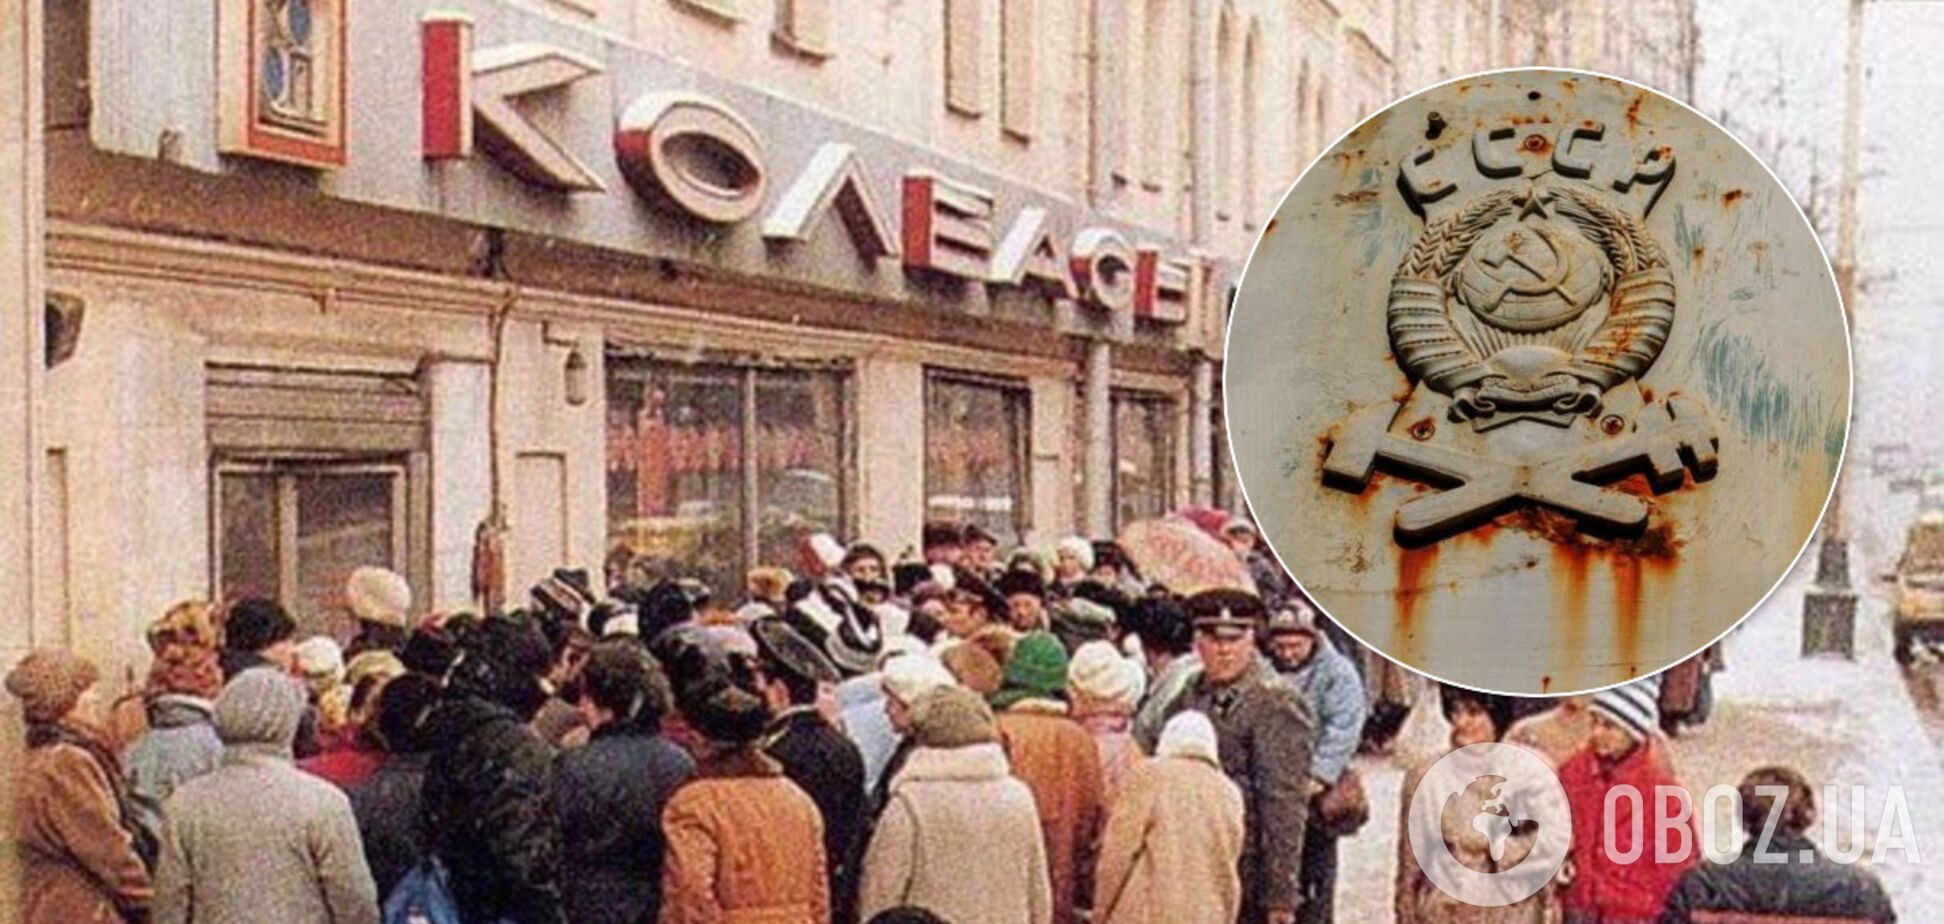 Був страшний дефіцит: у мережі згадали знамениту 'варьонку' по 2 рубля з СРСР